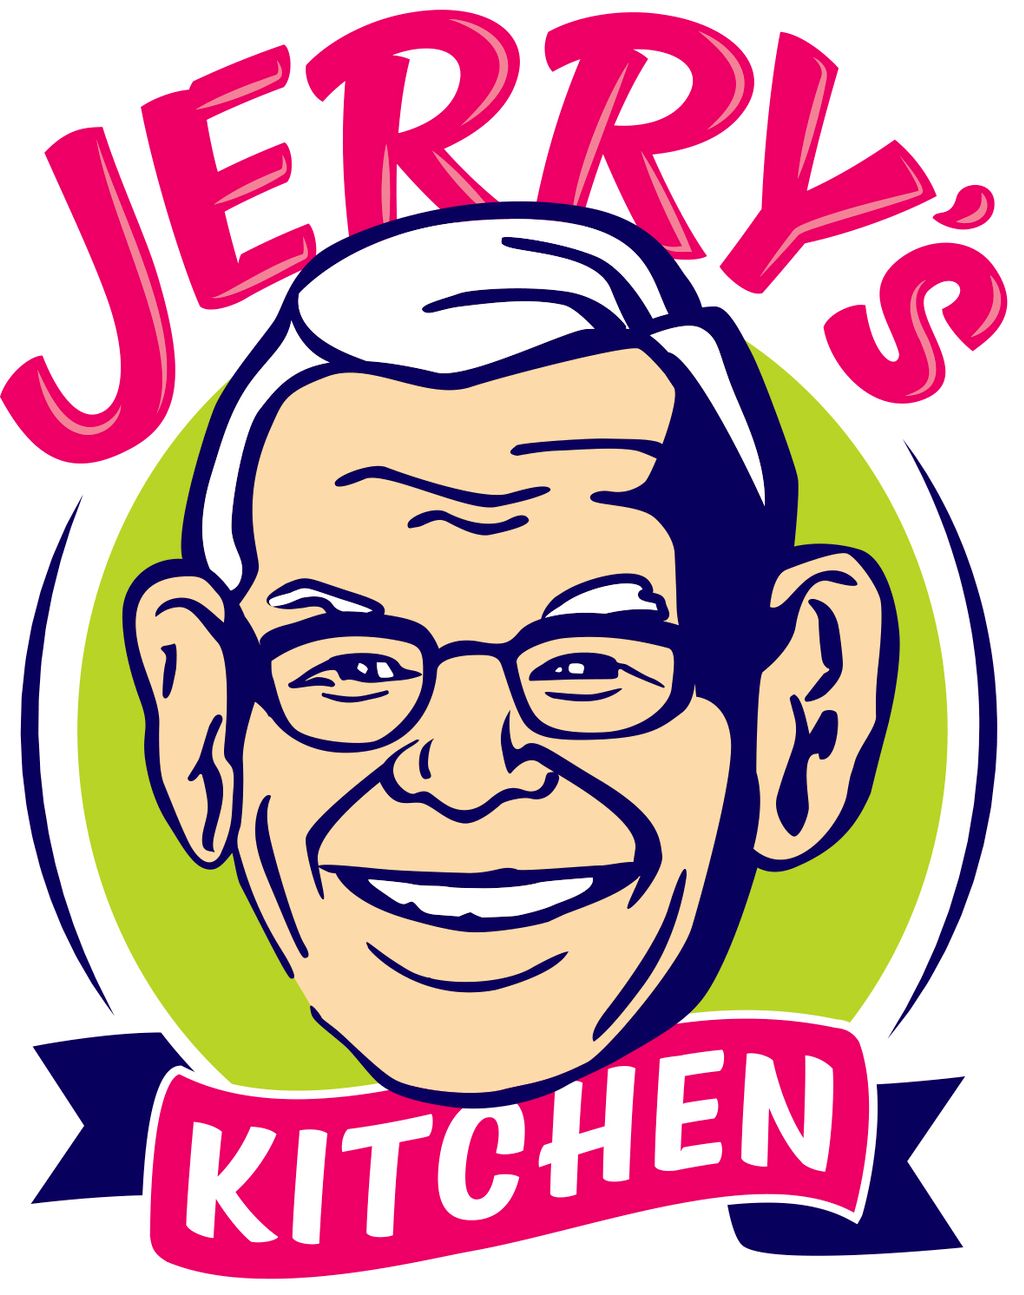 Jerry's Kitchen